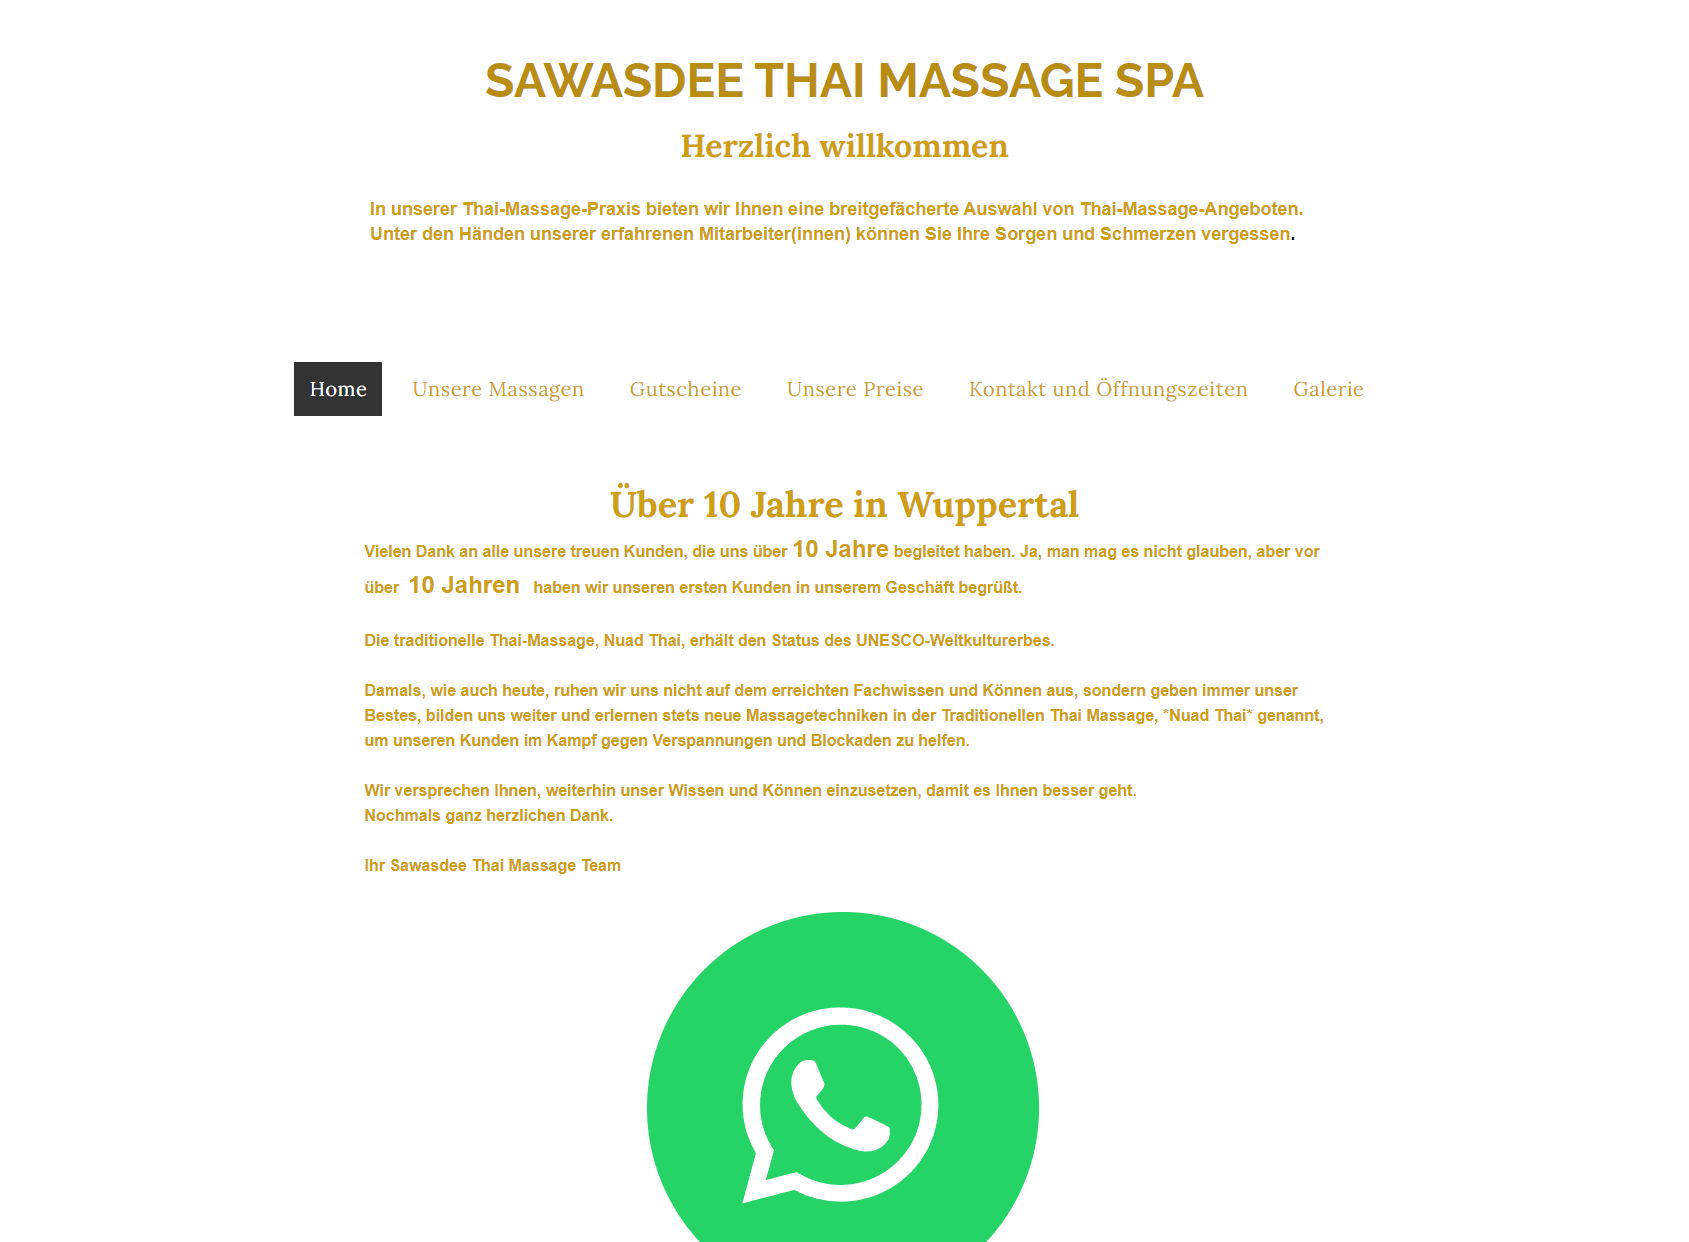 Thai Sawasdee Massage & Spa (gift certificate here)